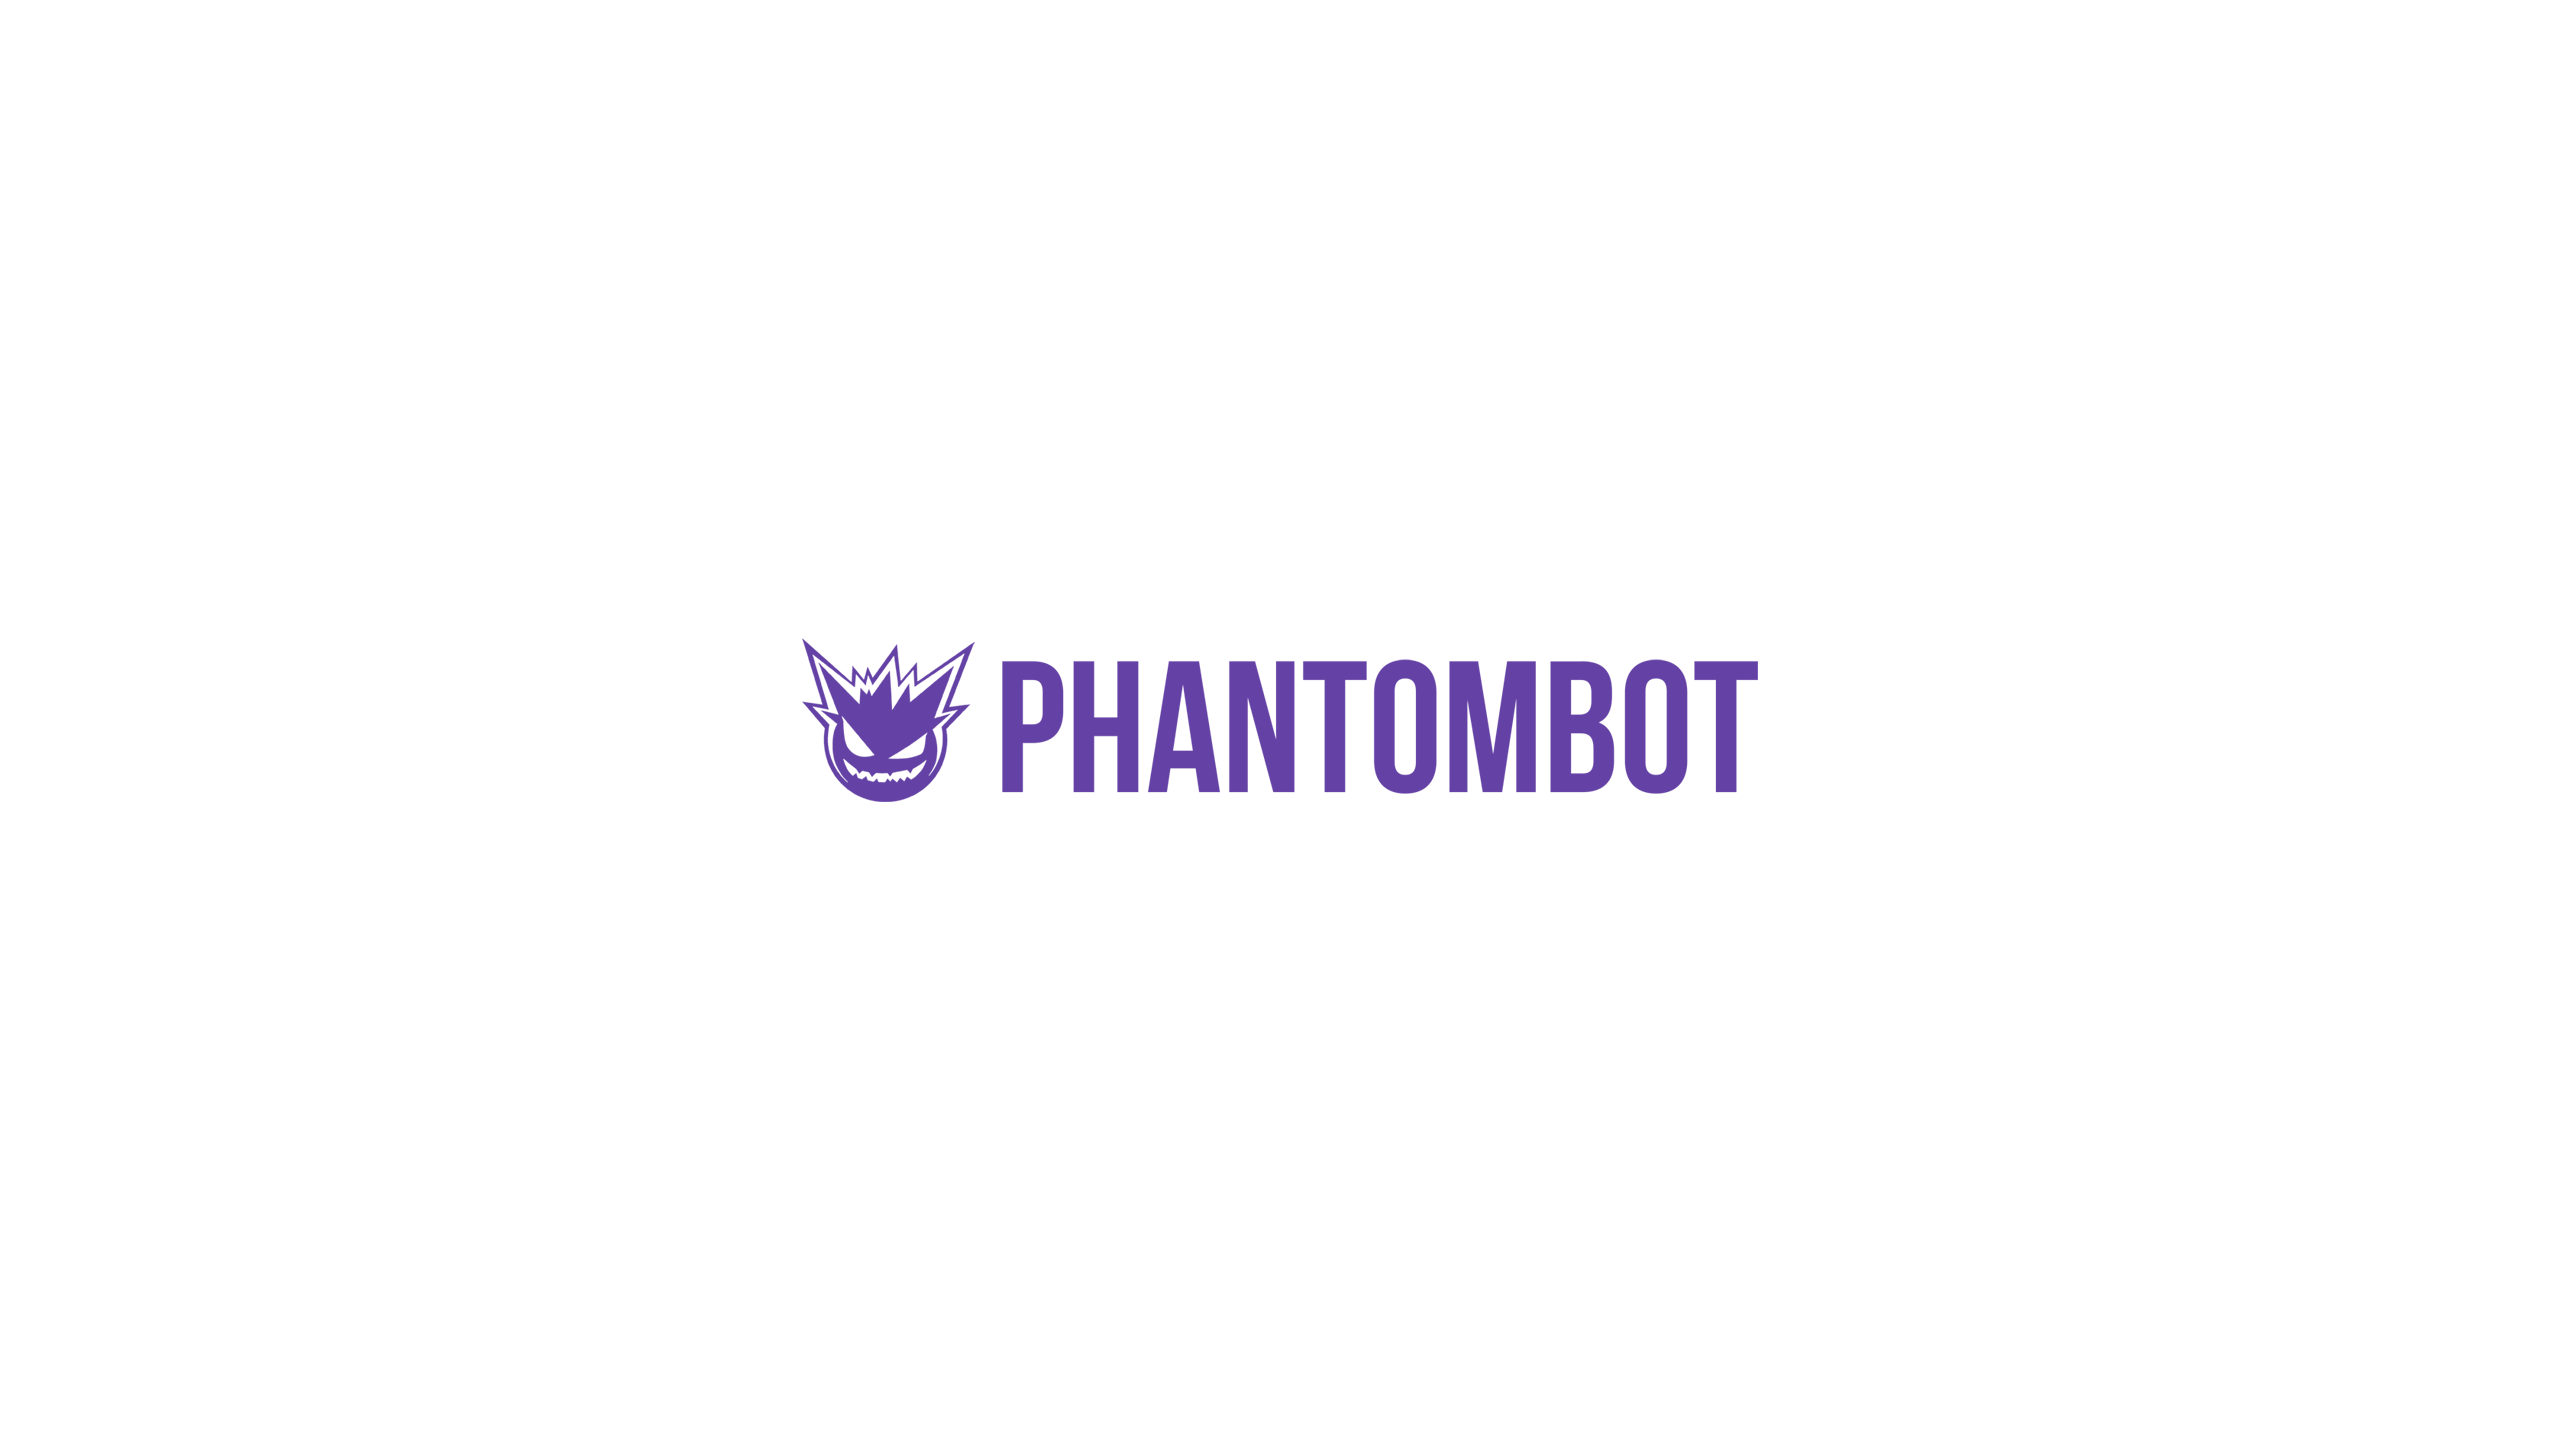 PhantomBot